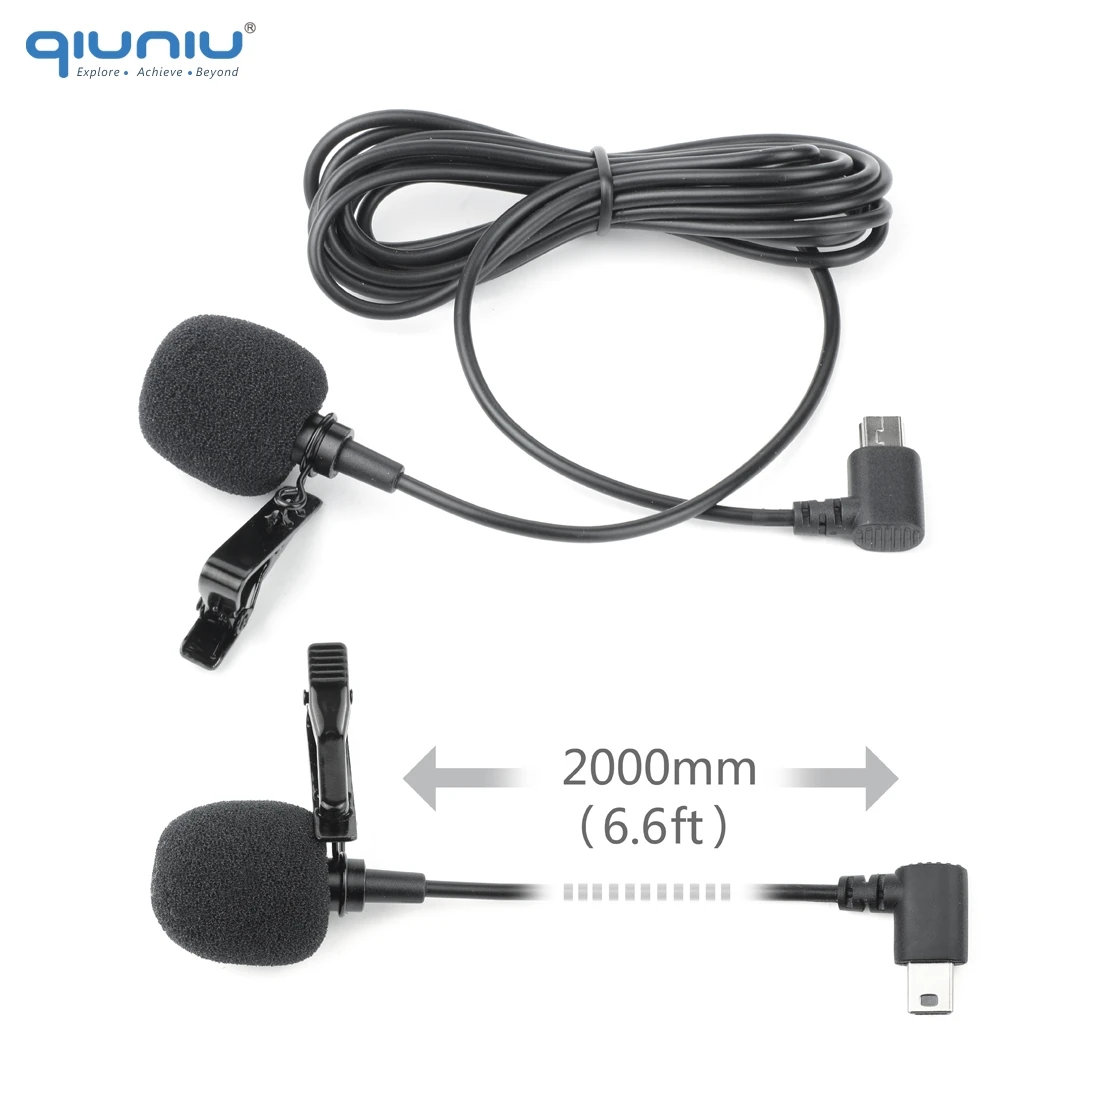 Внешний микрофон QIUNIU 2 м со стандартной рамкой защитный чехол накладка для GoPro Hero 3